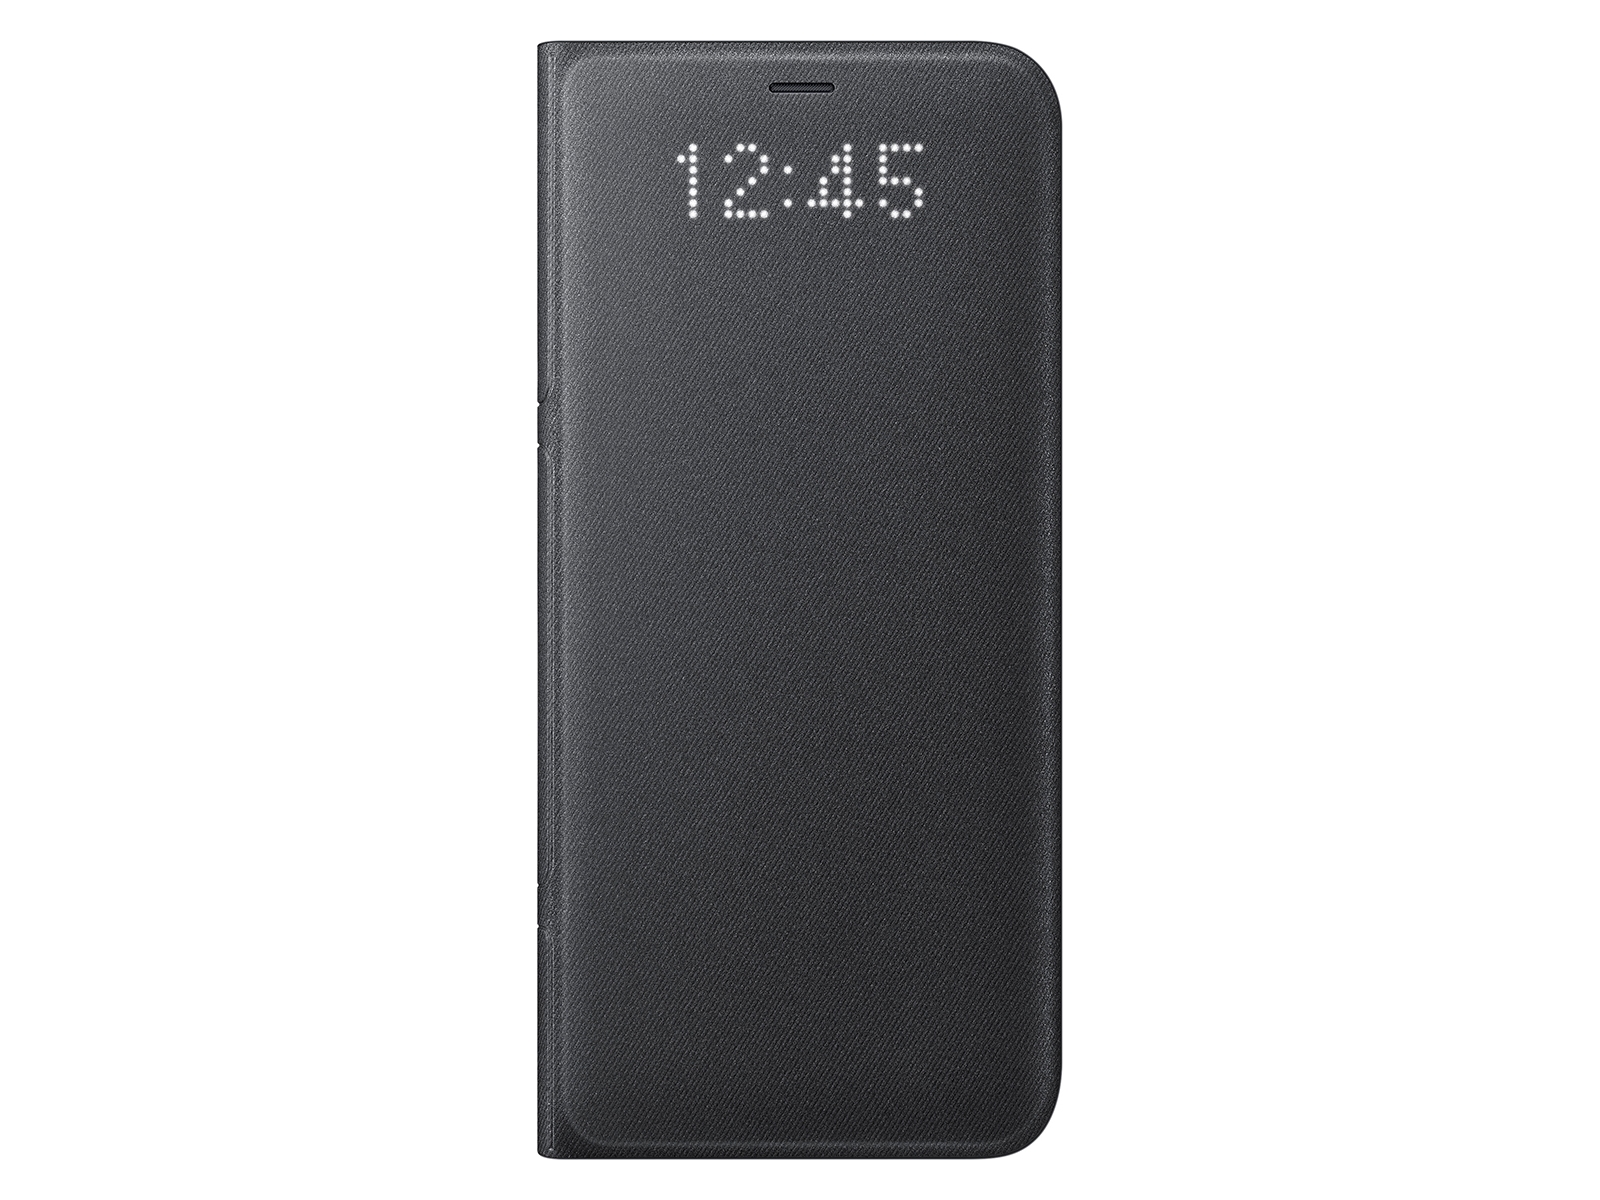 hvis Lab tåbelig Galaxy S8+ LED Wallet Cover, Black Mobile Accessories - EF-NG955PBEGUS |  Samsung US